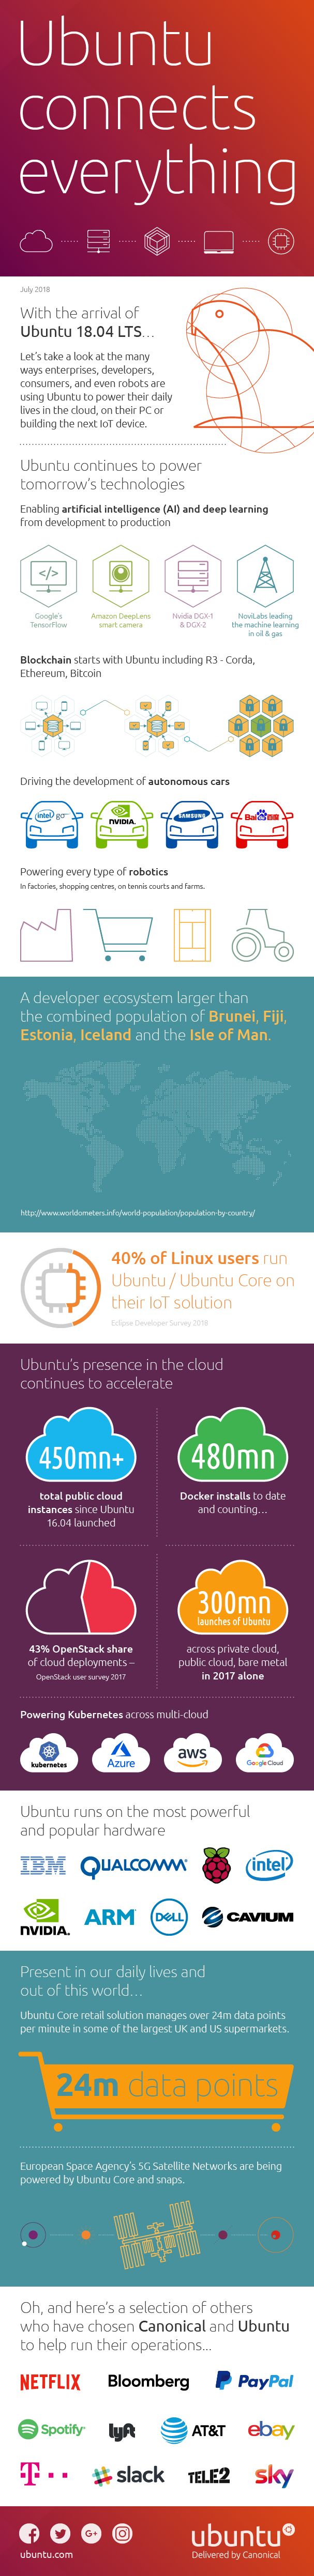 一张信息图告诉你全球数有多少用户使用Ubuntu Linux